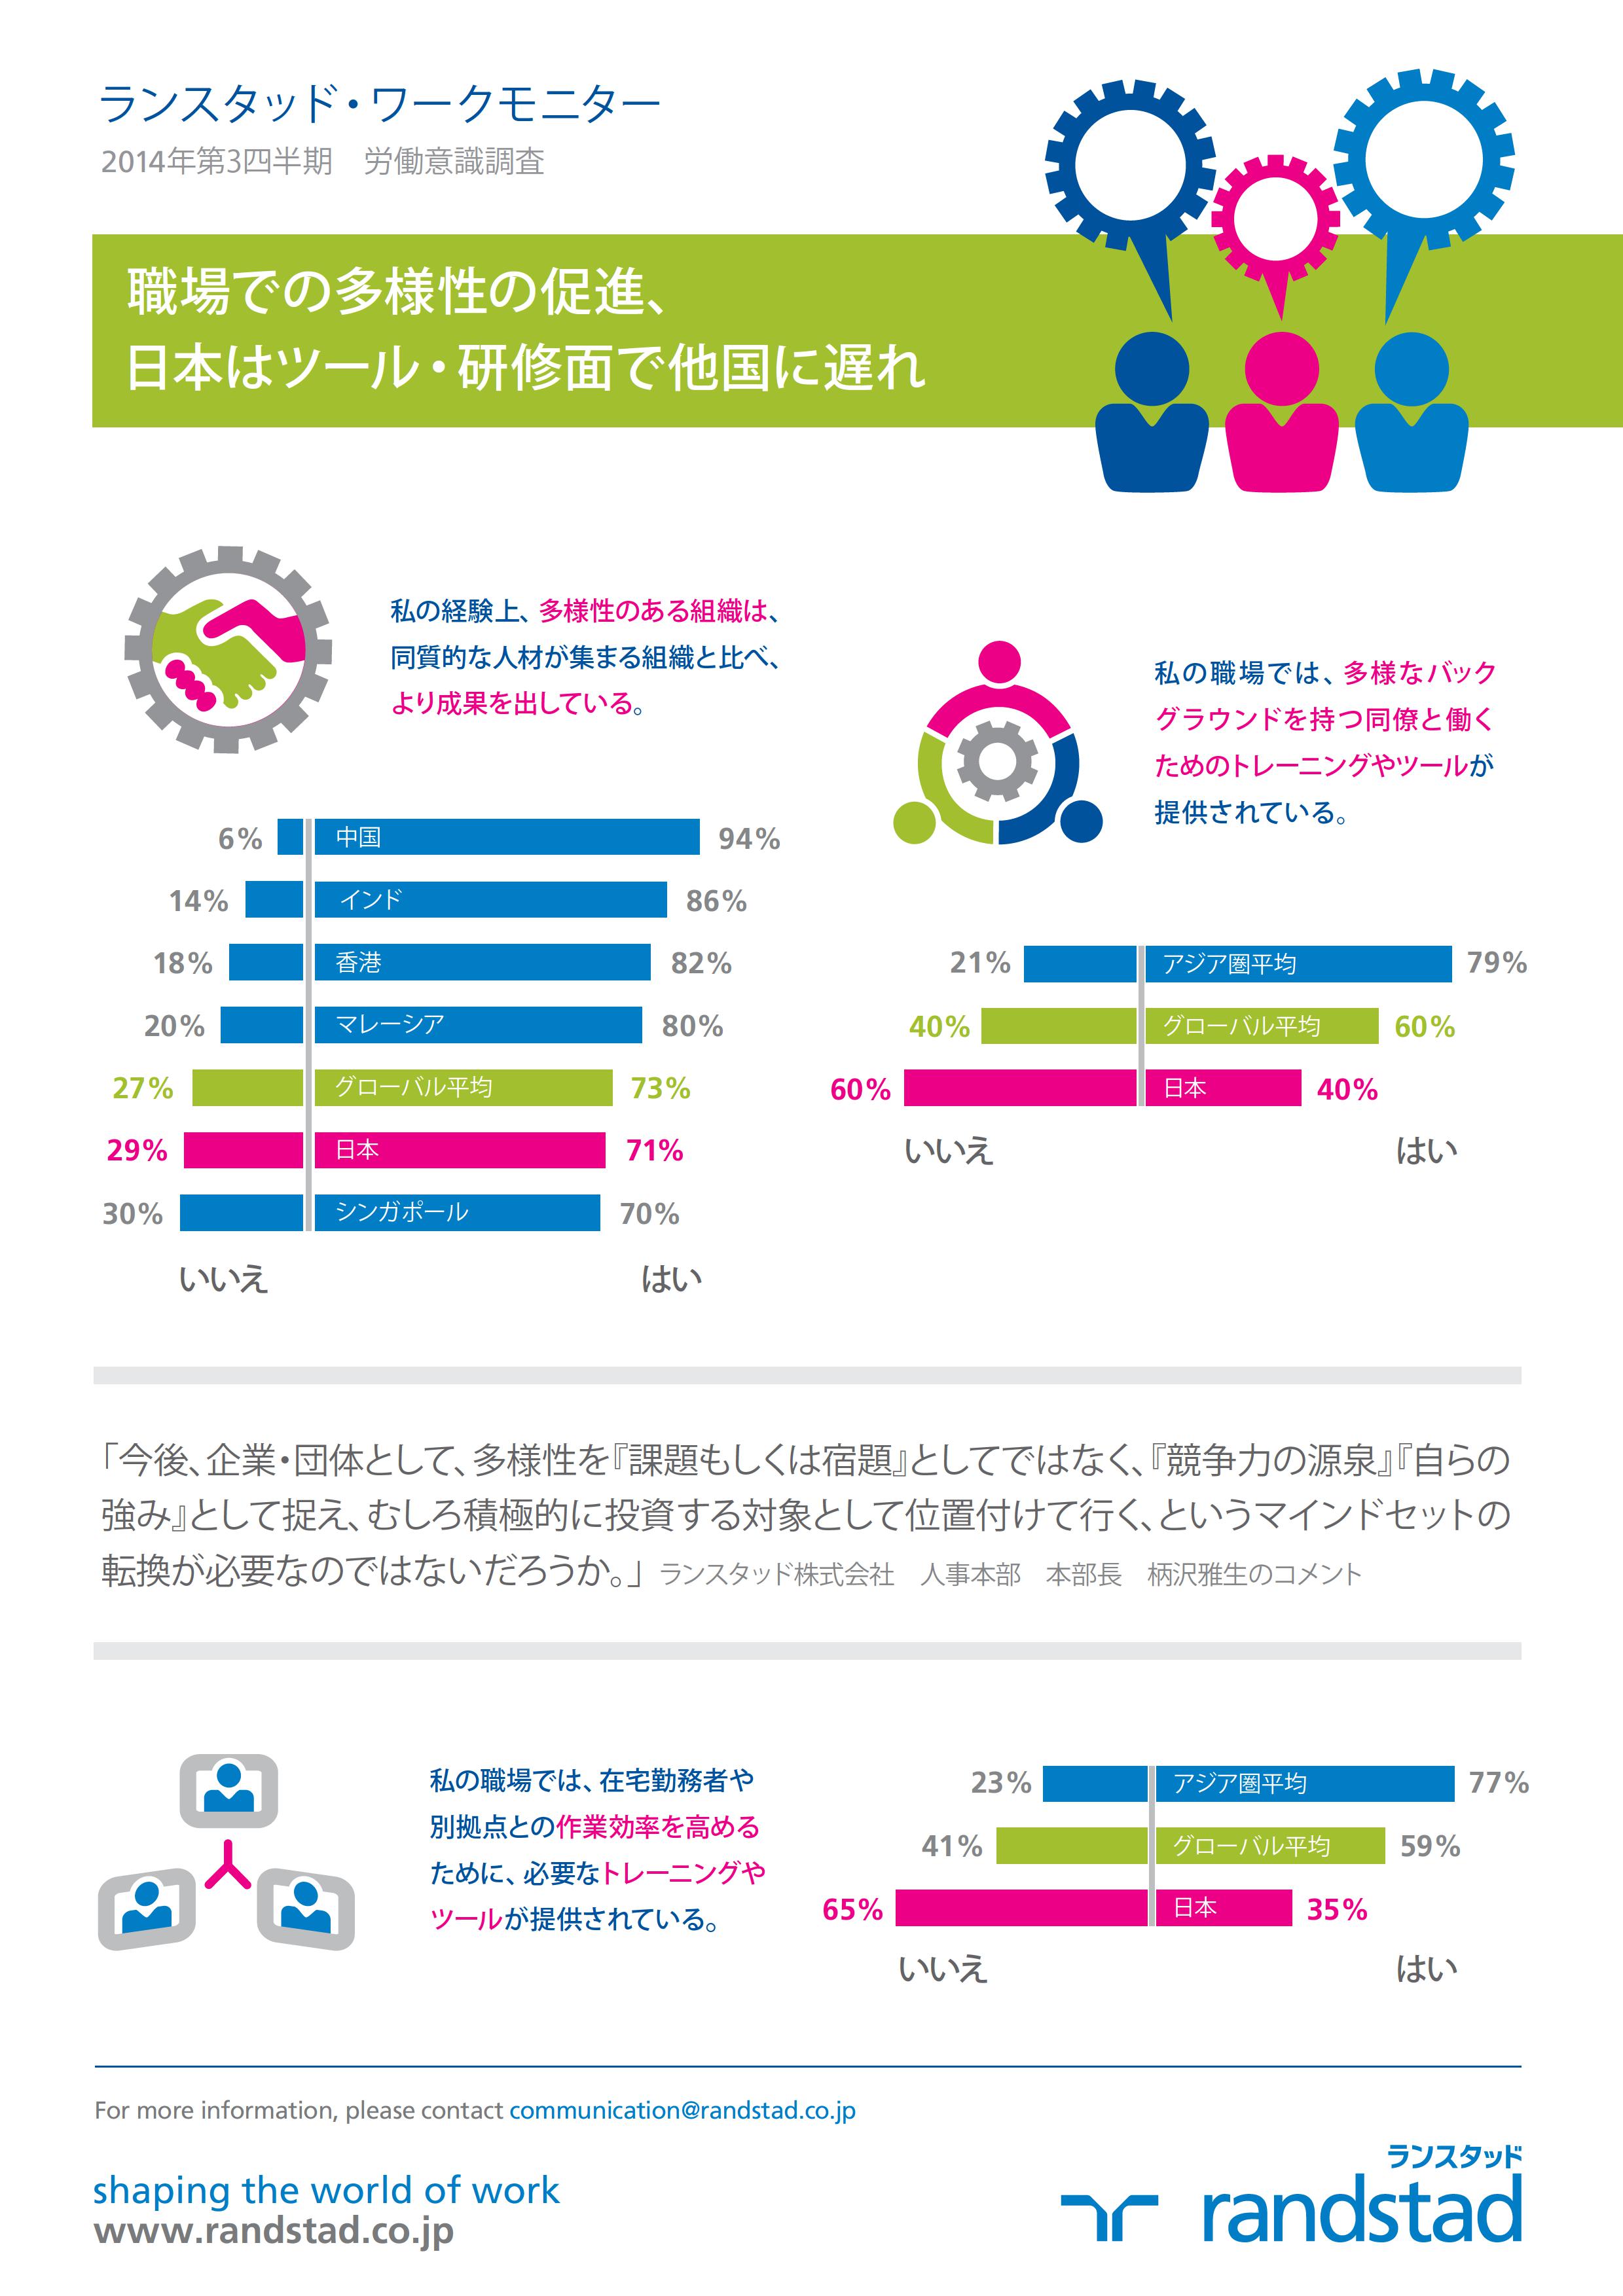 職場での多様性の促進、日本はツール・研修面で他国に遅れ